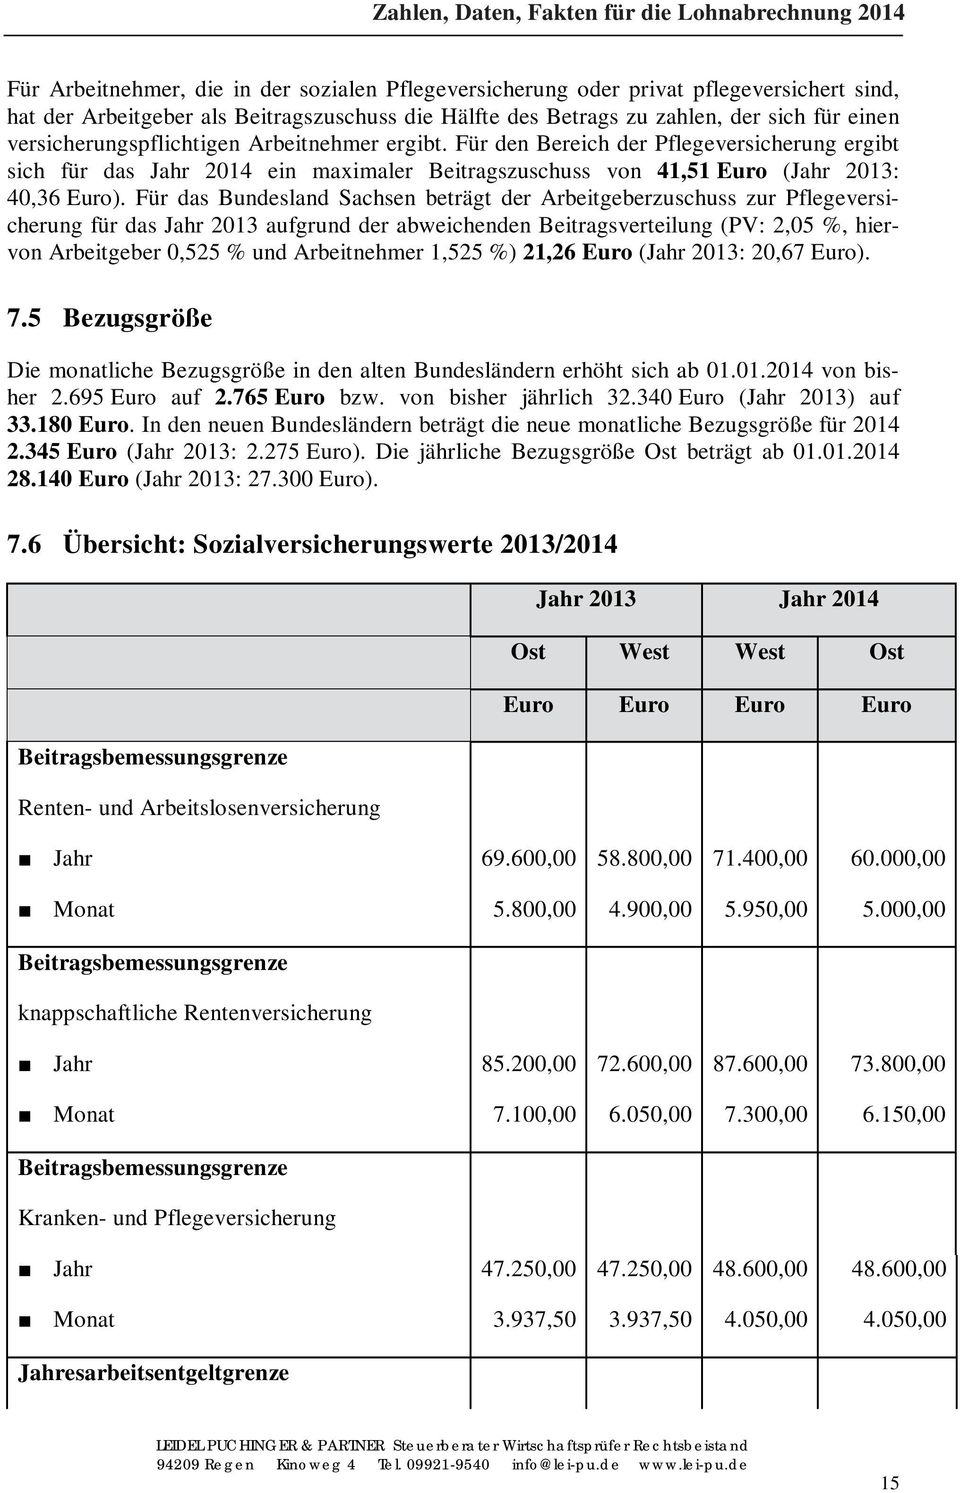 Für das Bundesland Sachsen beträgt der Arbeitgeberzuschuss zur Pflegeversicherung für das Jahr 2013 aufgrund der abweichenden Beitragsverteilung (PV: 2,05 %, hiervon Arbeitgeber 0,525 % und